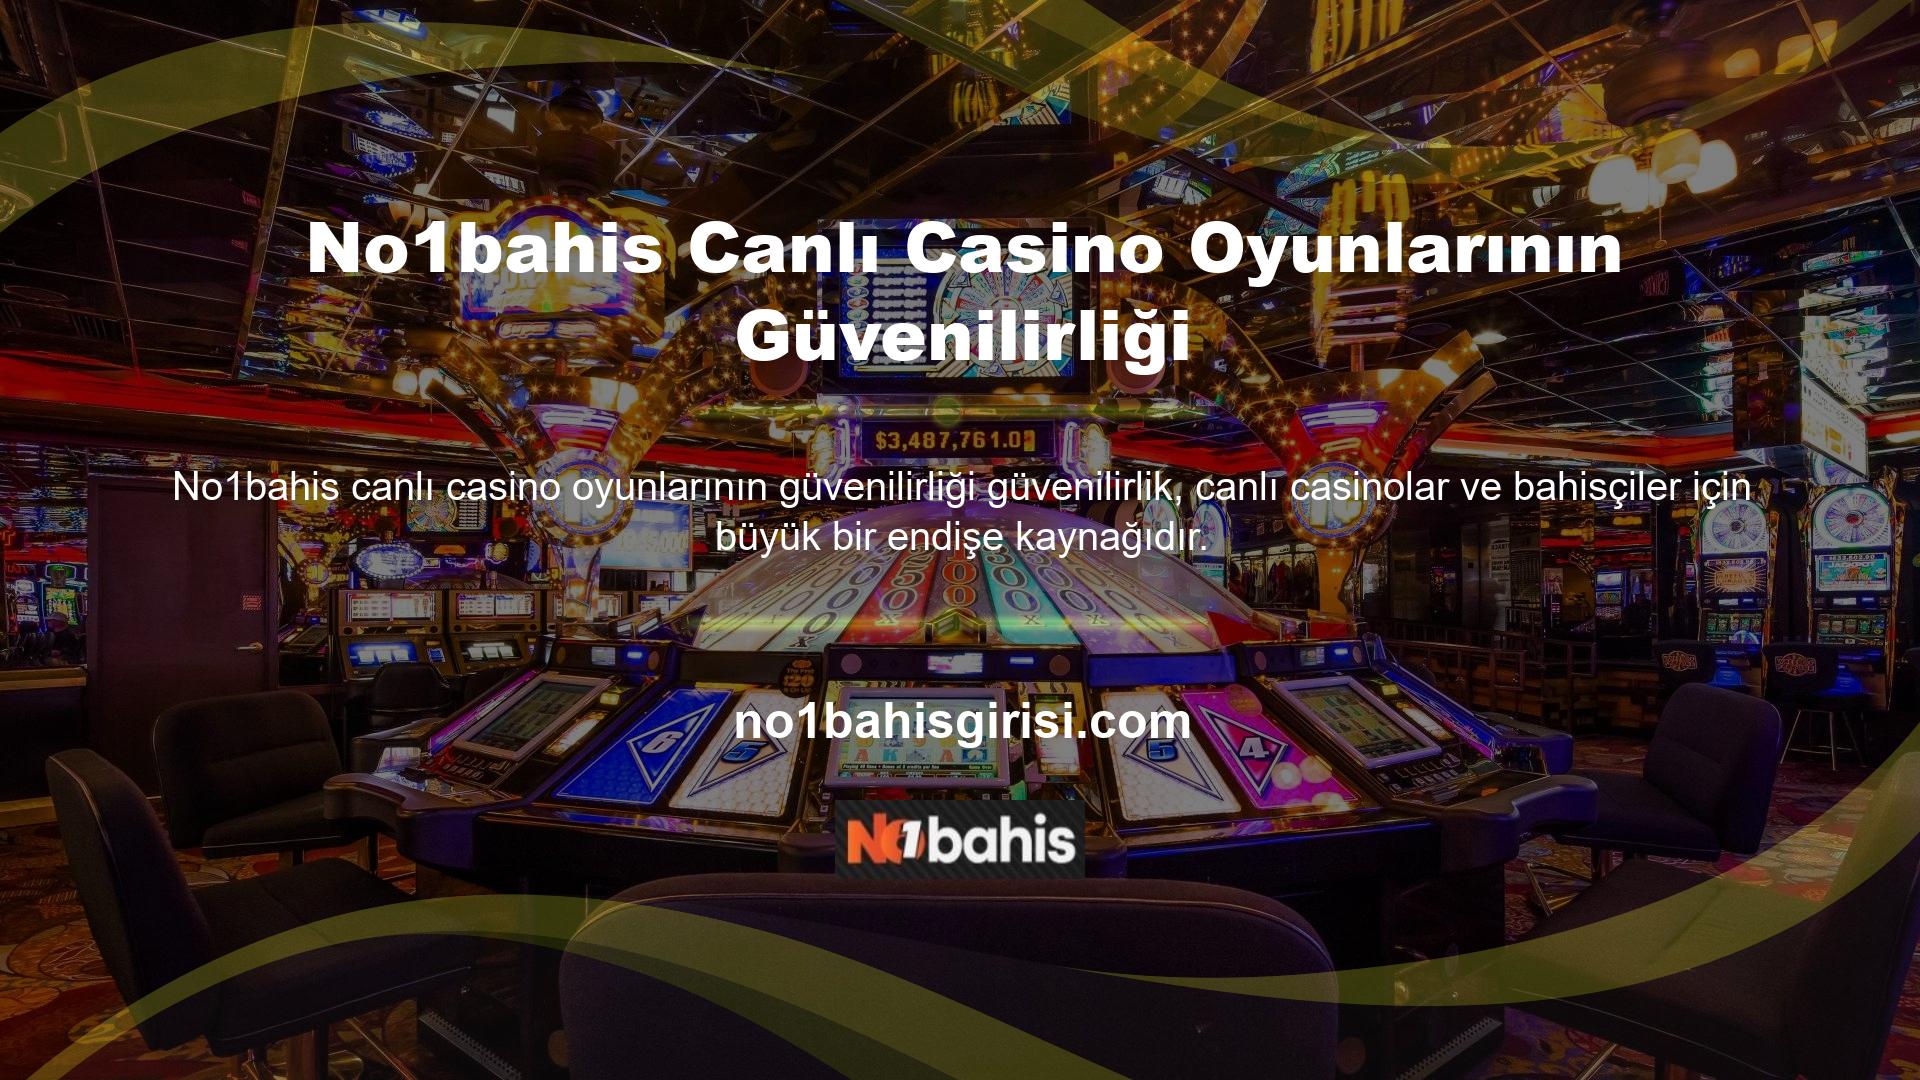 Bir canlı casino sitesinin güvenilirliği en önemli kriter olarak düşünülmelidir